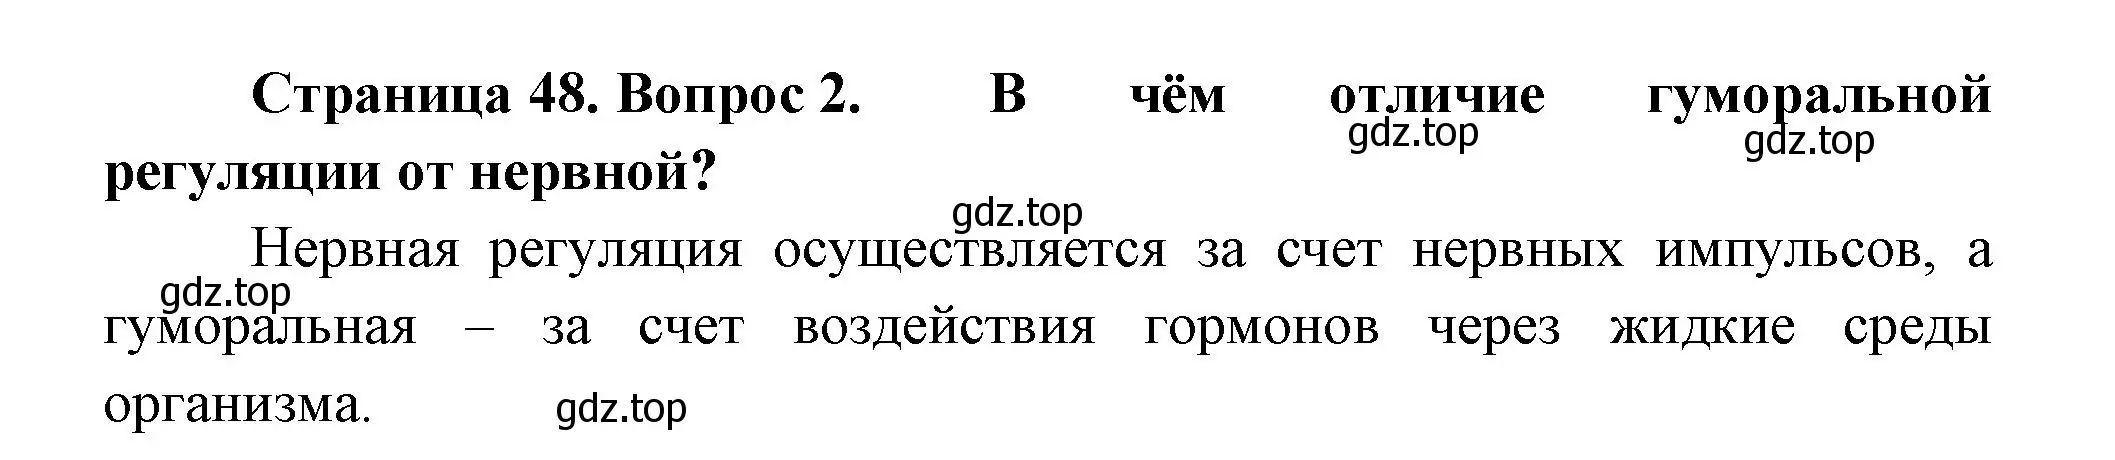 Решение номер 2 (страница 48) гдз по биологии 9 класс Пасечник, Каменский, учебник